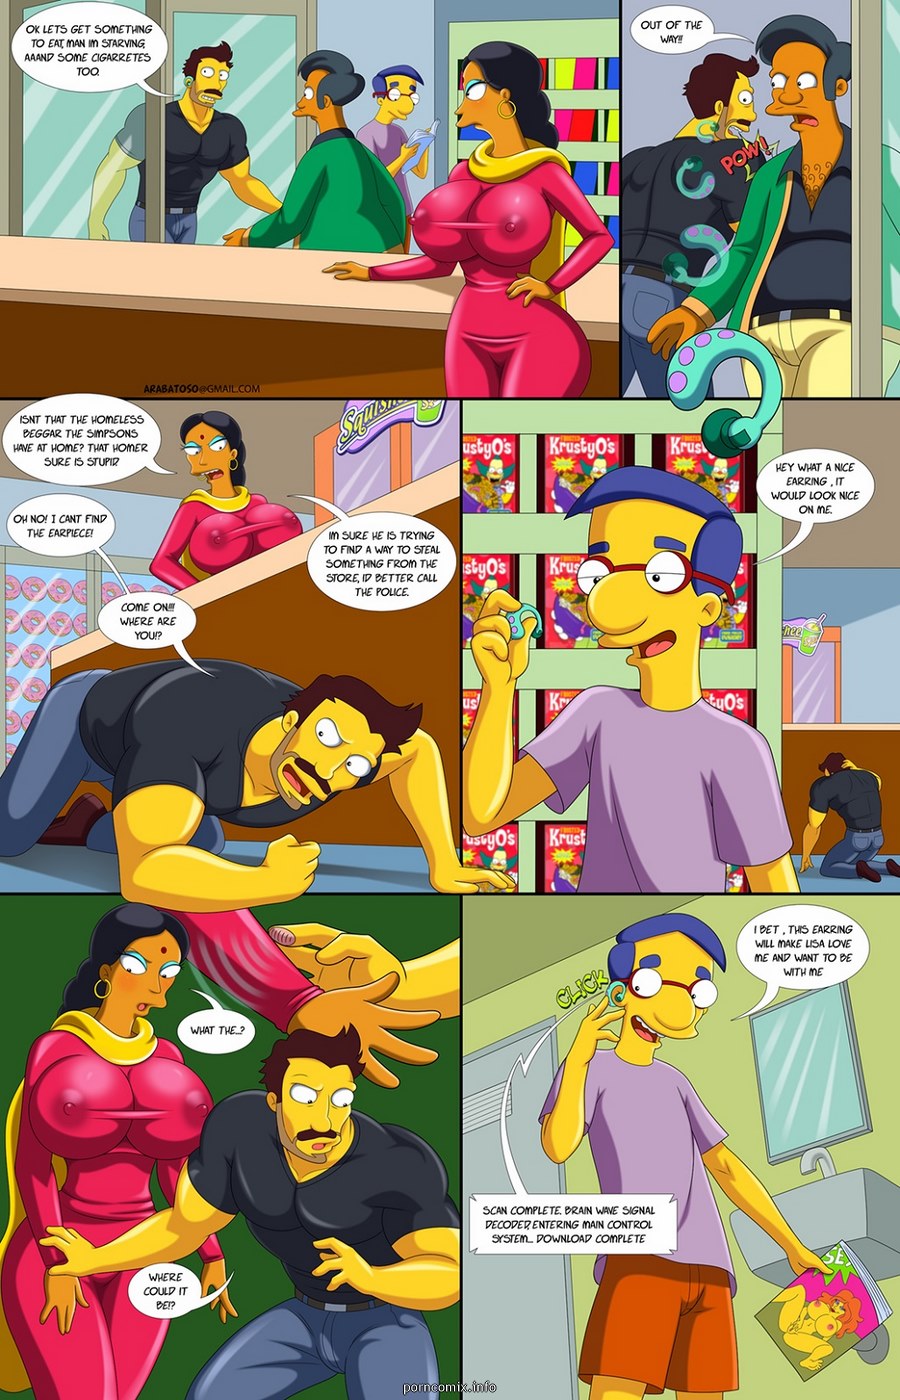 Porn Comics - Darren’s Adventure 2 (The Simpsons) porn comics 8 muses